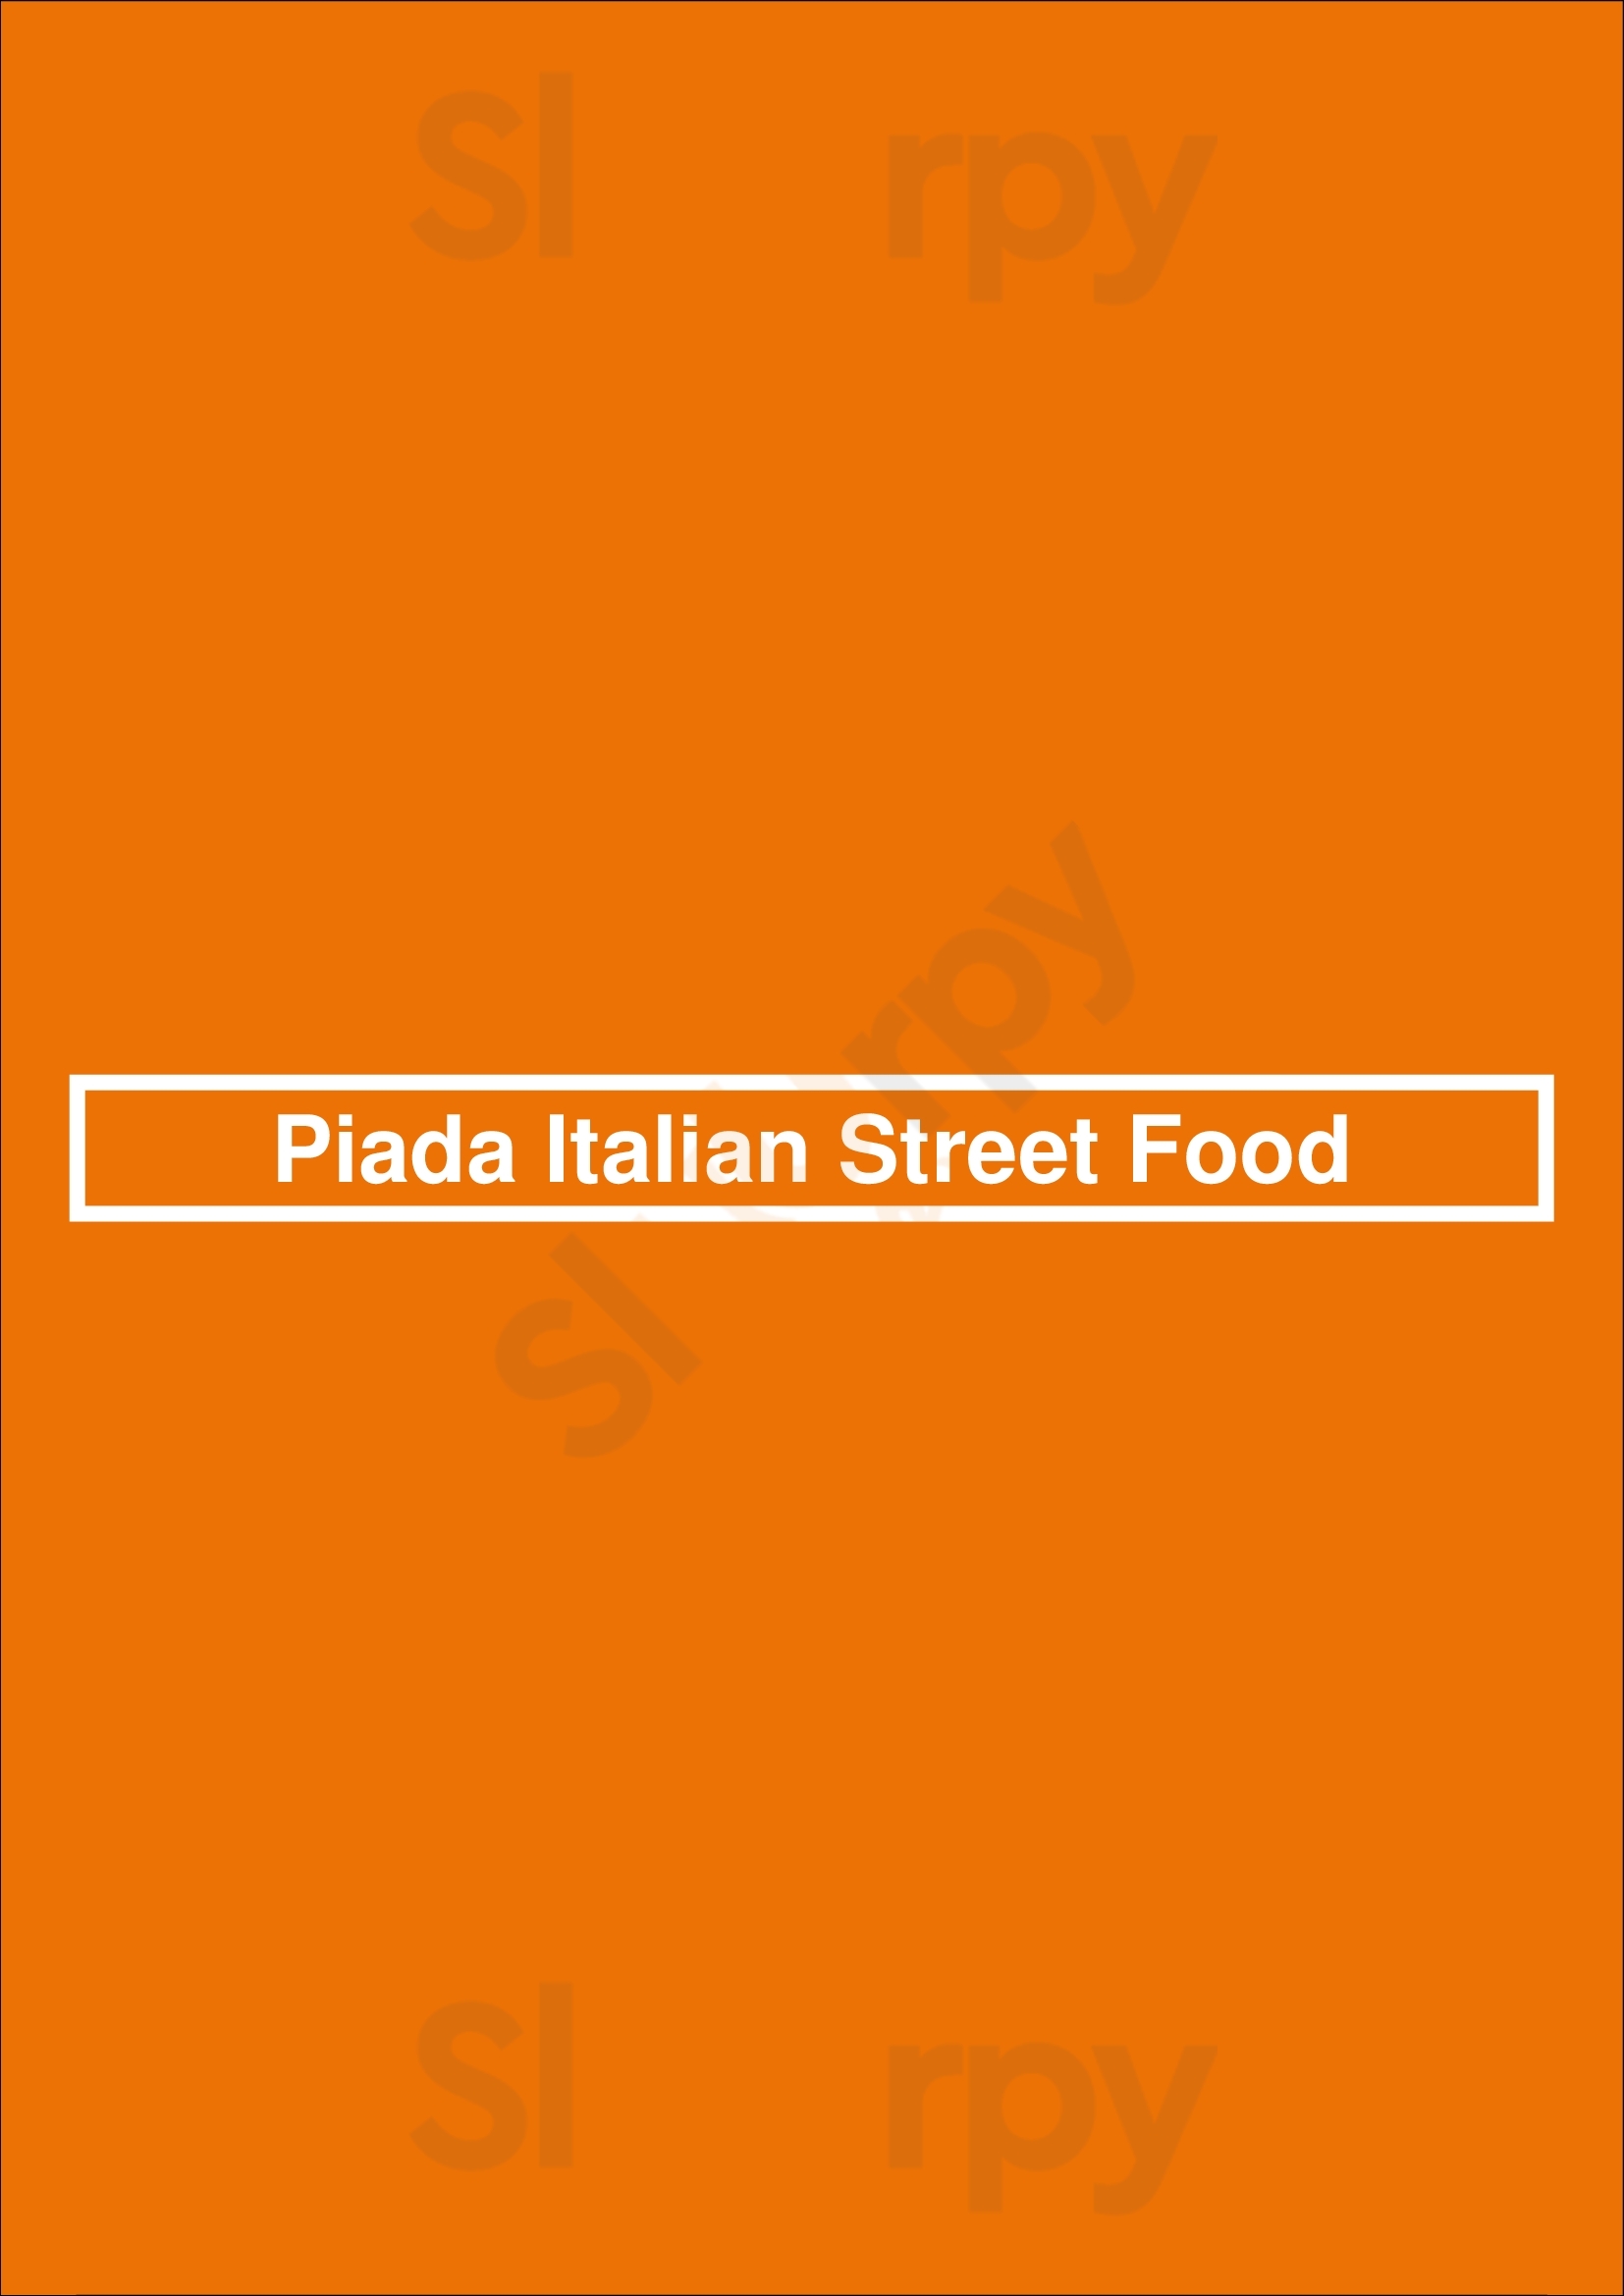 Piada Italian Street Food Columbus Menu - 1